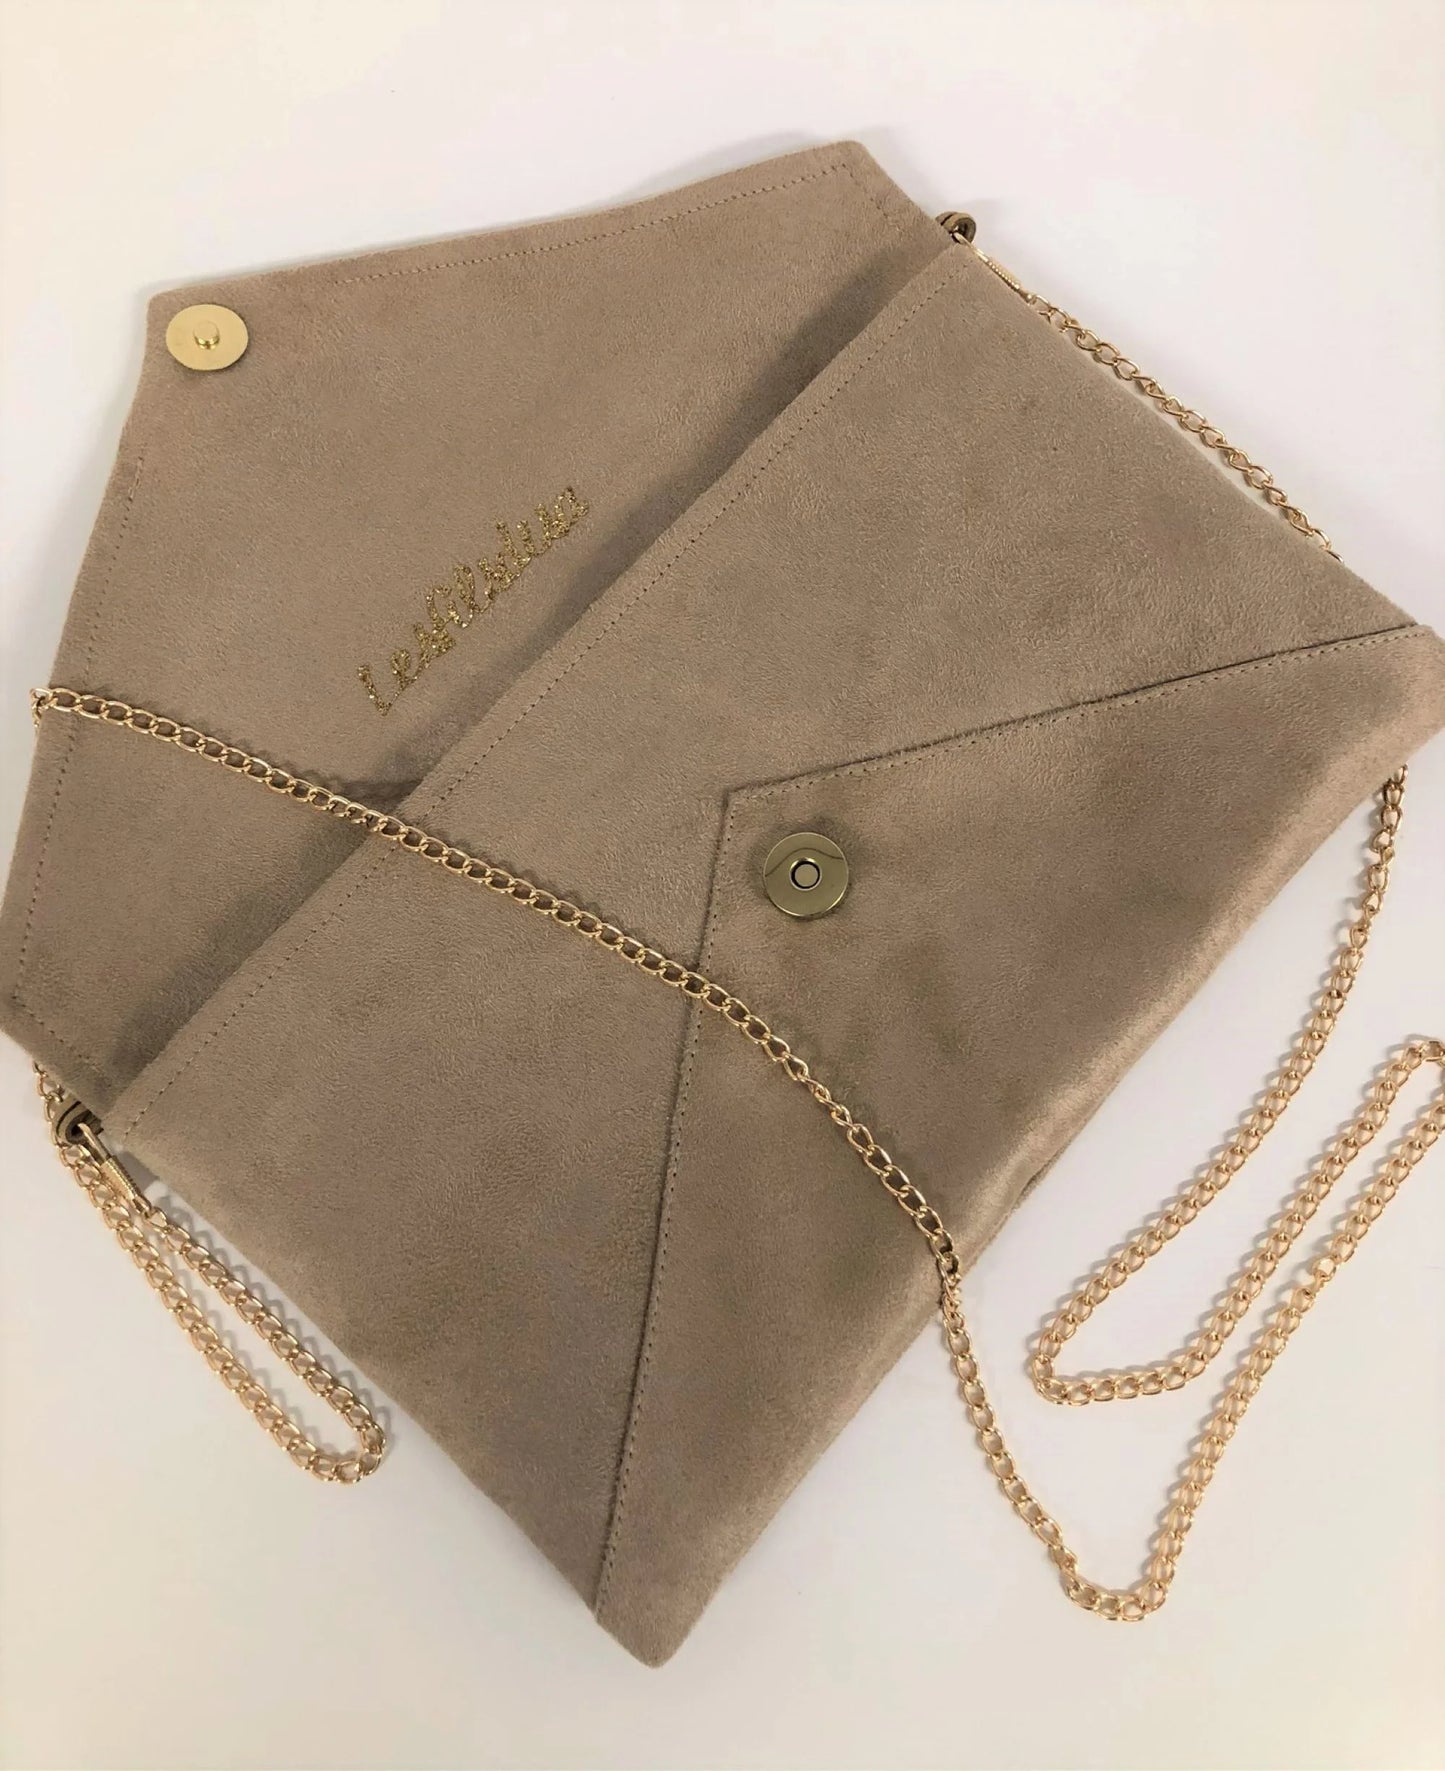 Le sac pochette Isa beige à paillettes dorées, avec chainette dorée, ouvert.